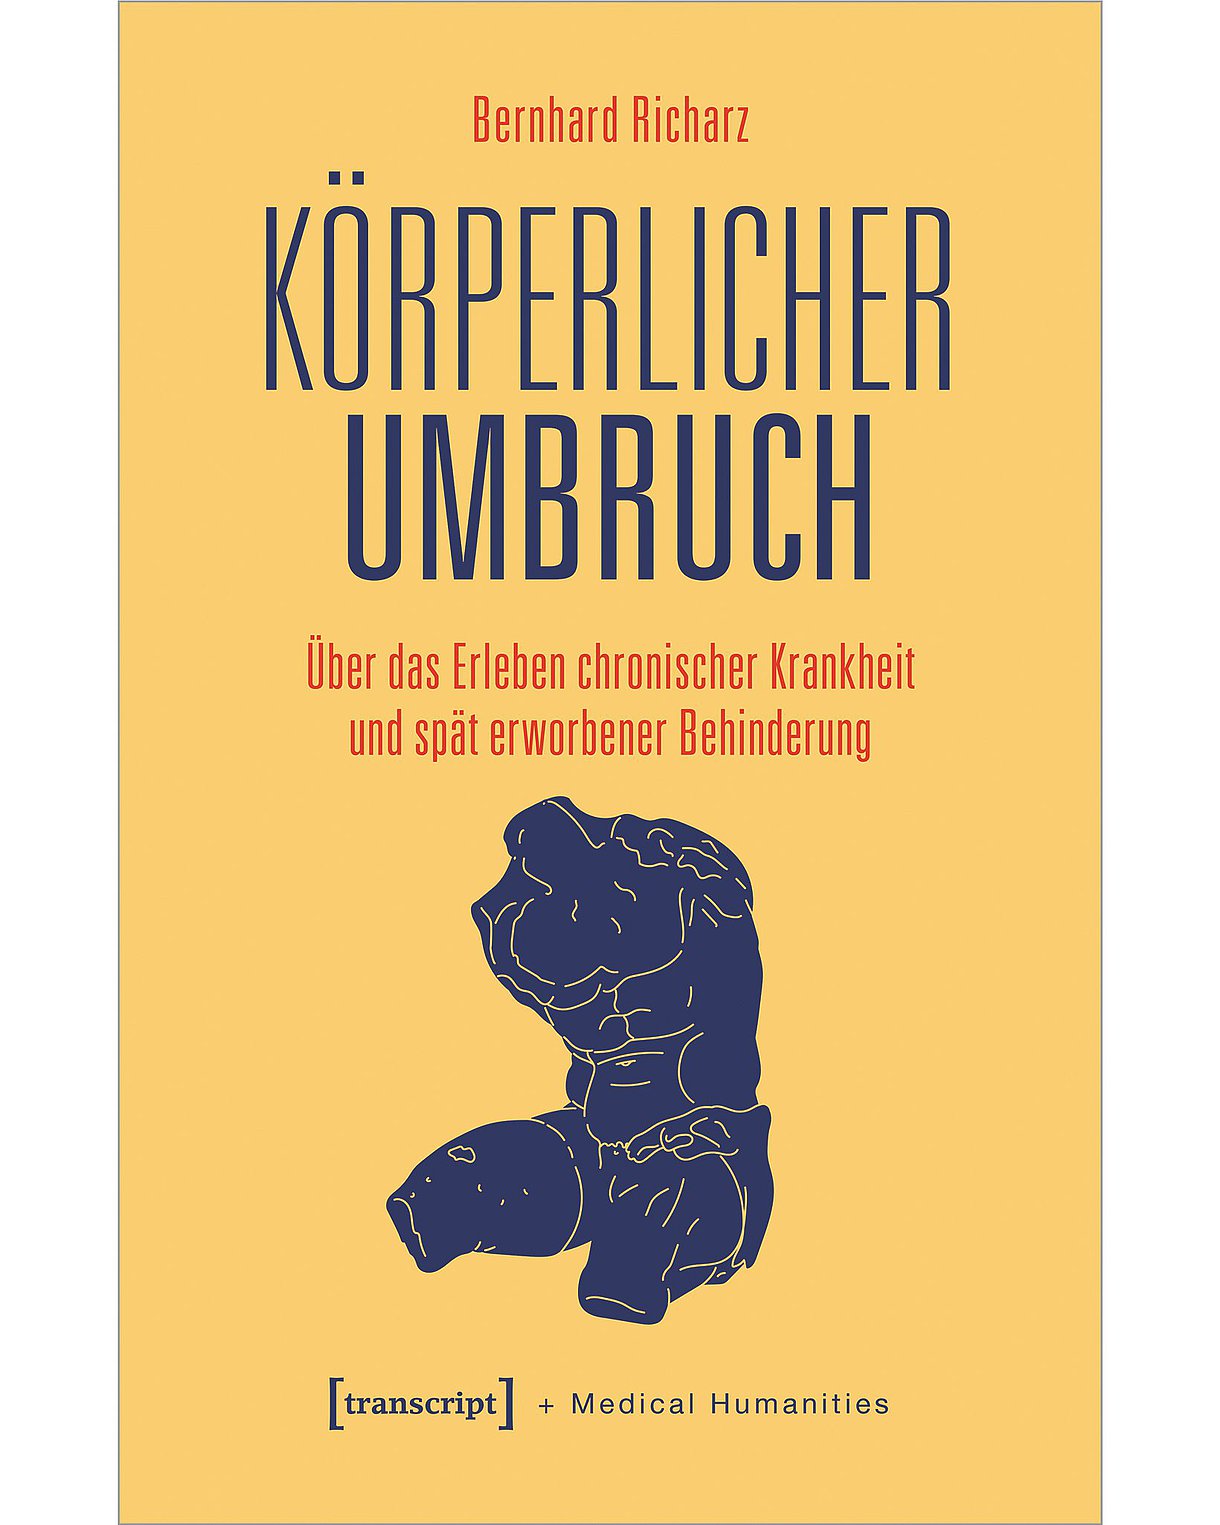 Foto: Buchcover des Buches: Bernhard Richarz: Körperlicher Umbruch. Über das Erleben chronischer Krankheit und spät erworbener Behinderung. Bielefeld, transcript, 2023